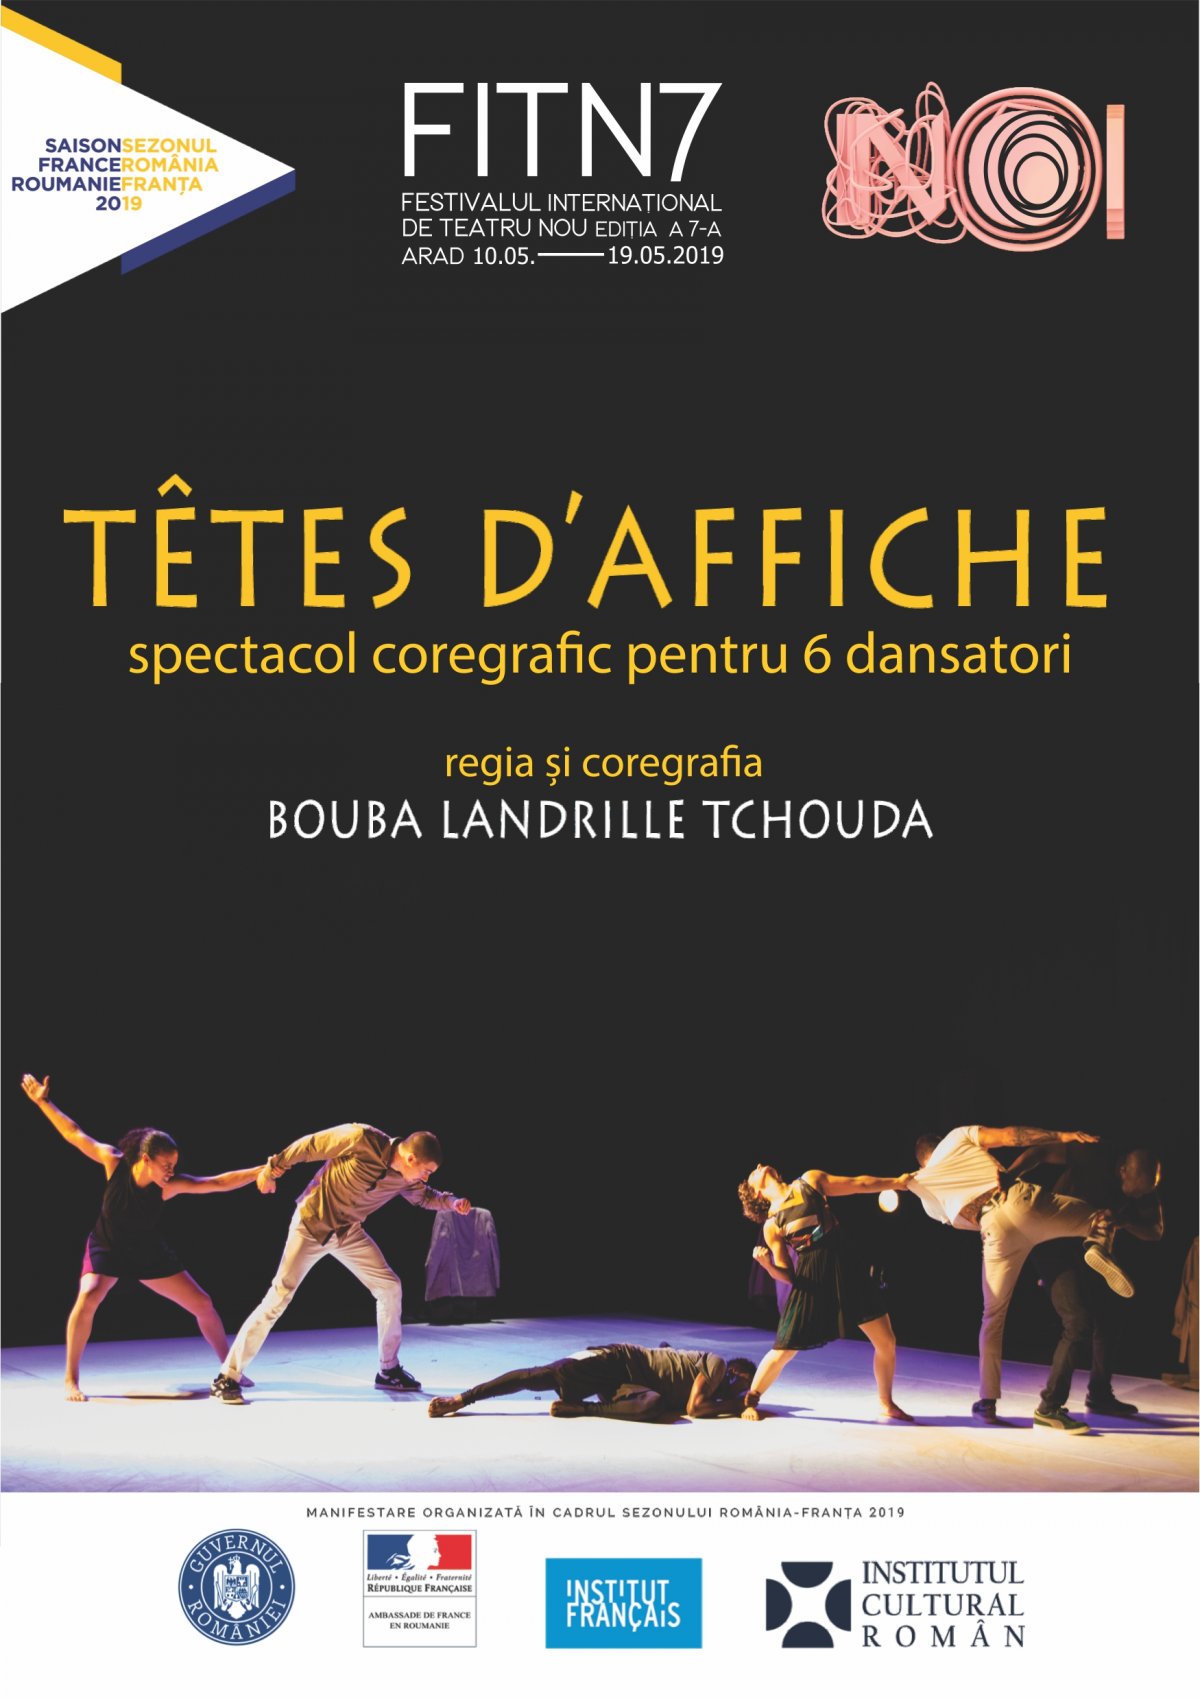  Festivalul Internațional de Teatru Nou îi aduce la Arad  pe coregraful Bouba Landrille Tchouda și Compania de Dans Cie Malka  (Grenoble Franța)